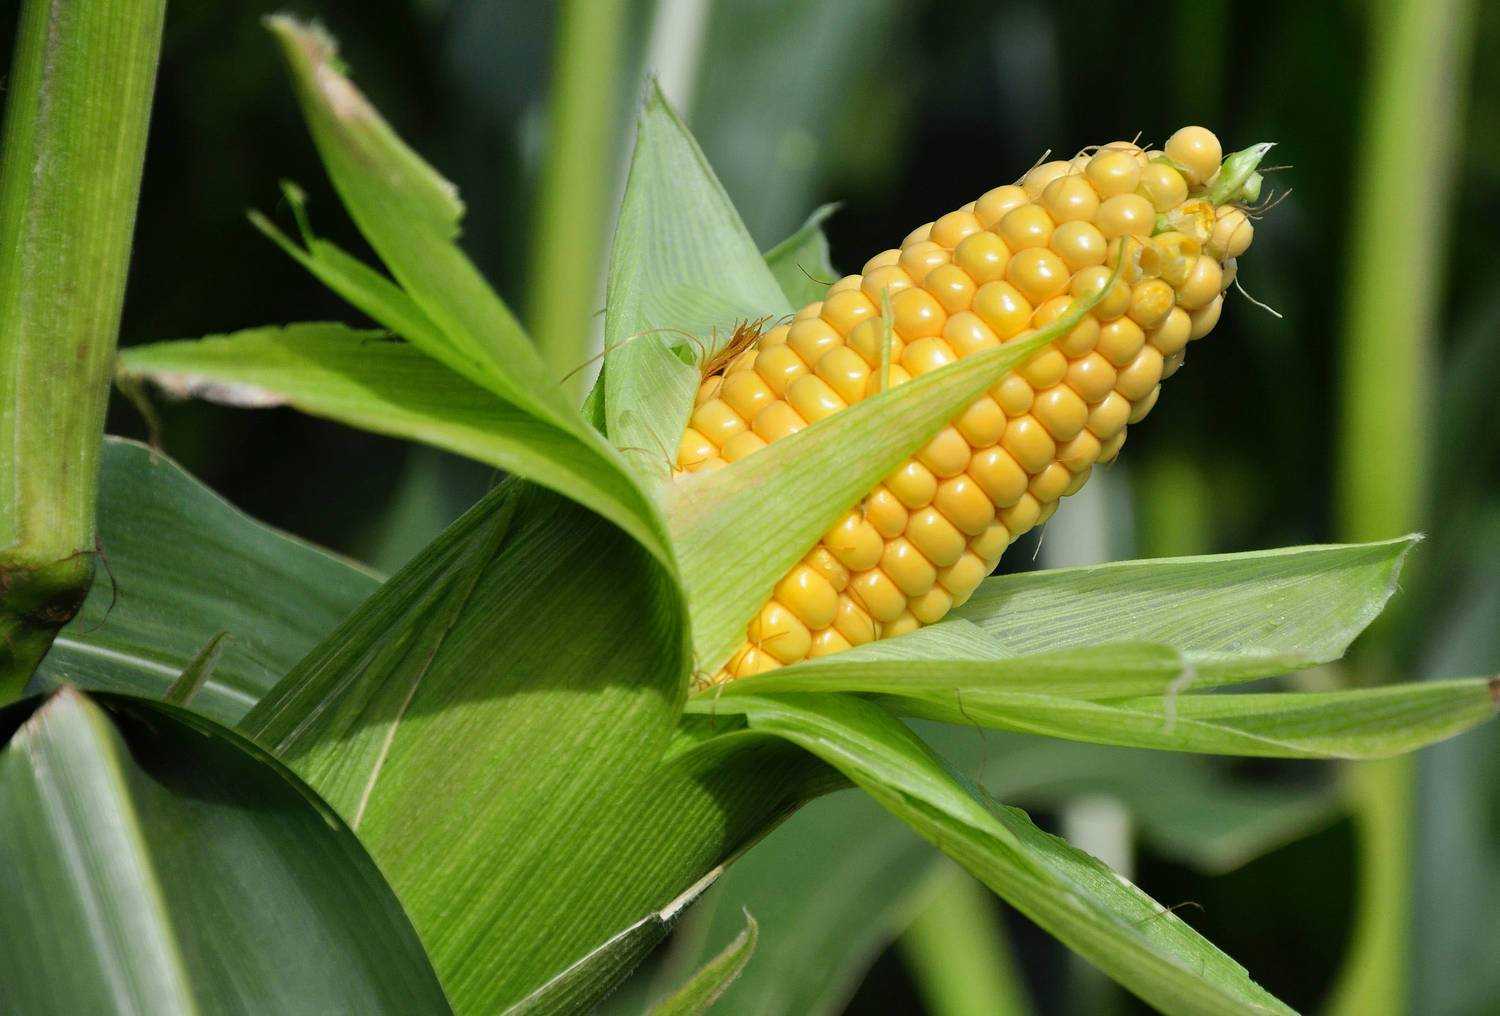 Как выращивать кукурузу в огороде? кукуруза - посадка и уход.